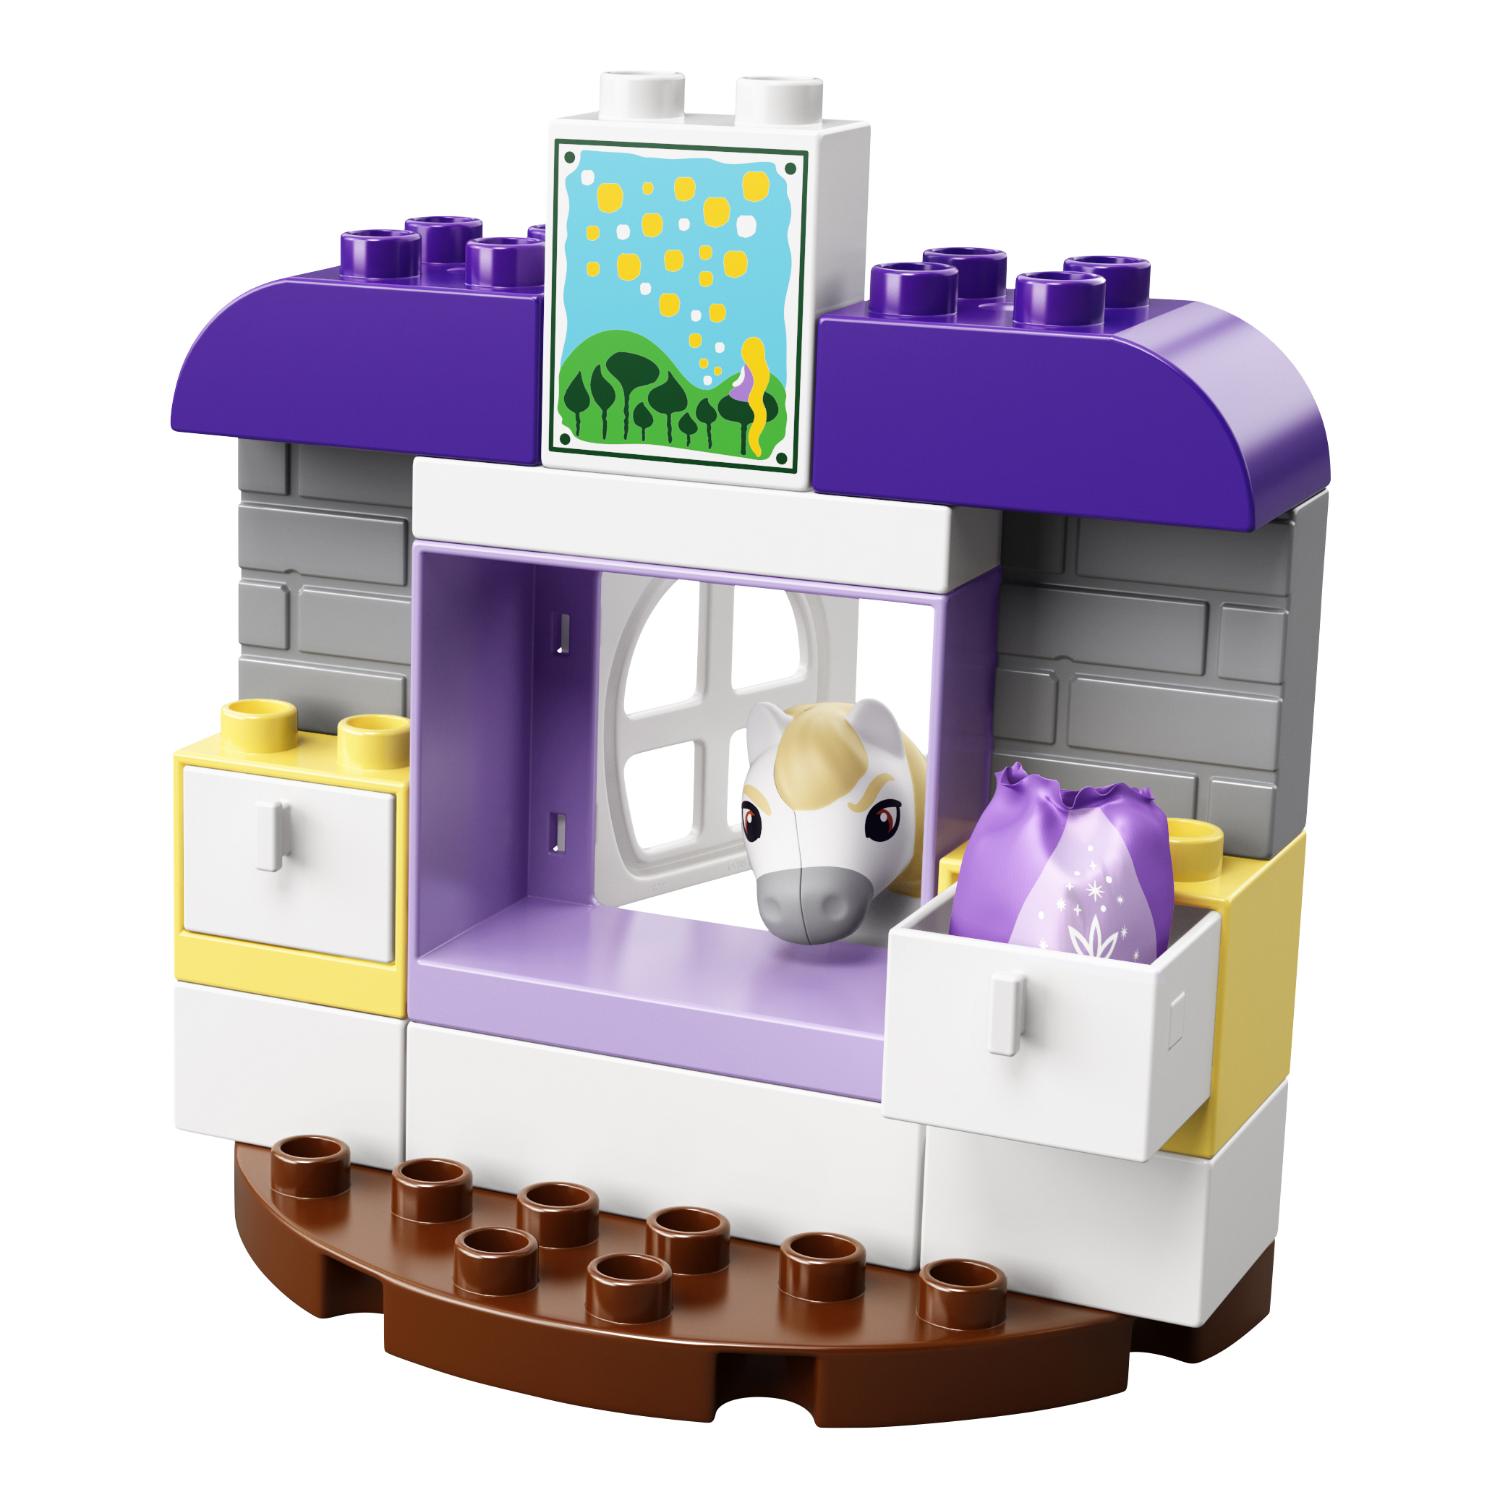 Конструктор Lego Duplo Princess - Башня Рапунцель  